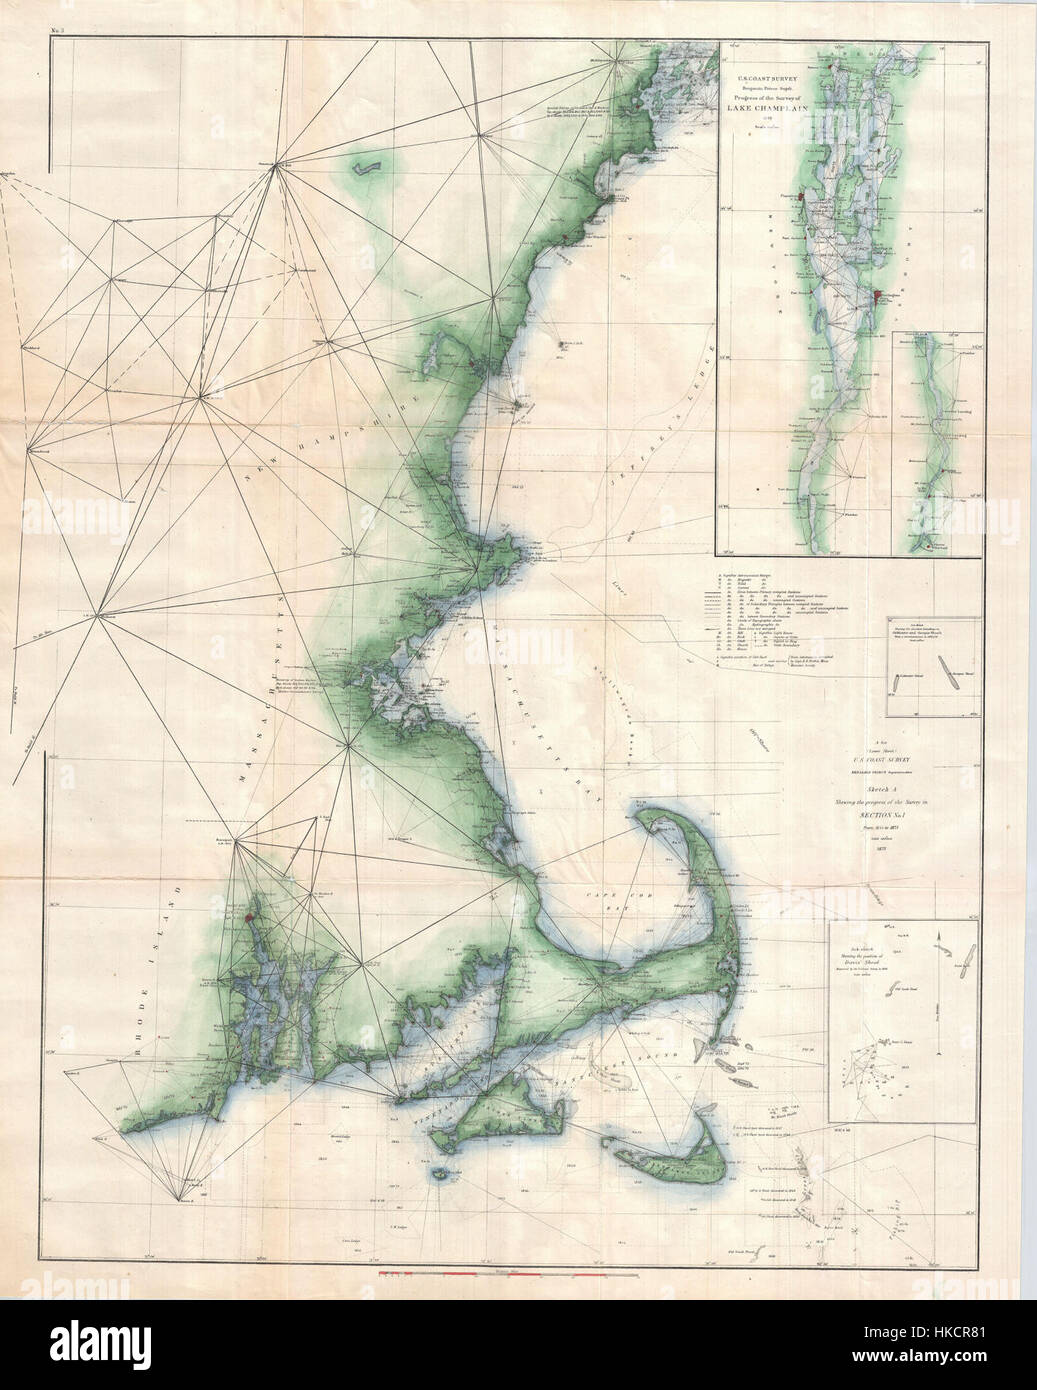 1873 Enquête sur la côte américaine de la carte graphique de Cape Cod, Nantucket, Marthas Vineyard, et Cape Ann Geographicus CapeCod uscs 1873 Banque D'Images